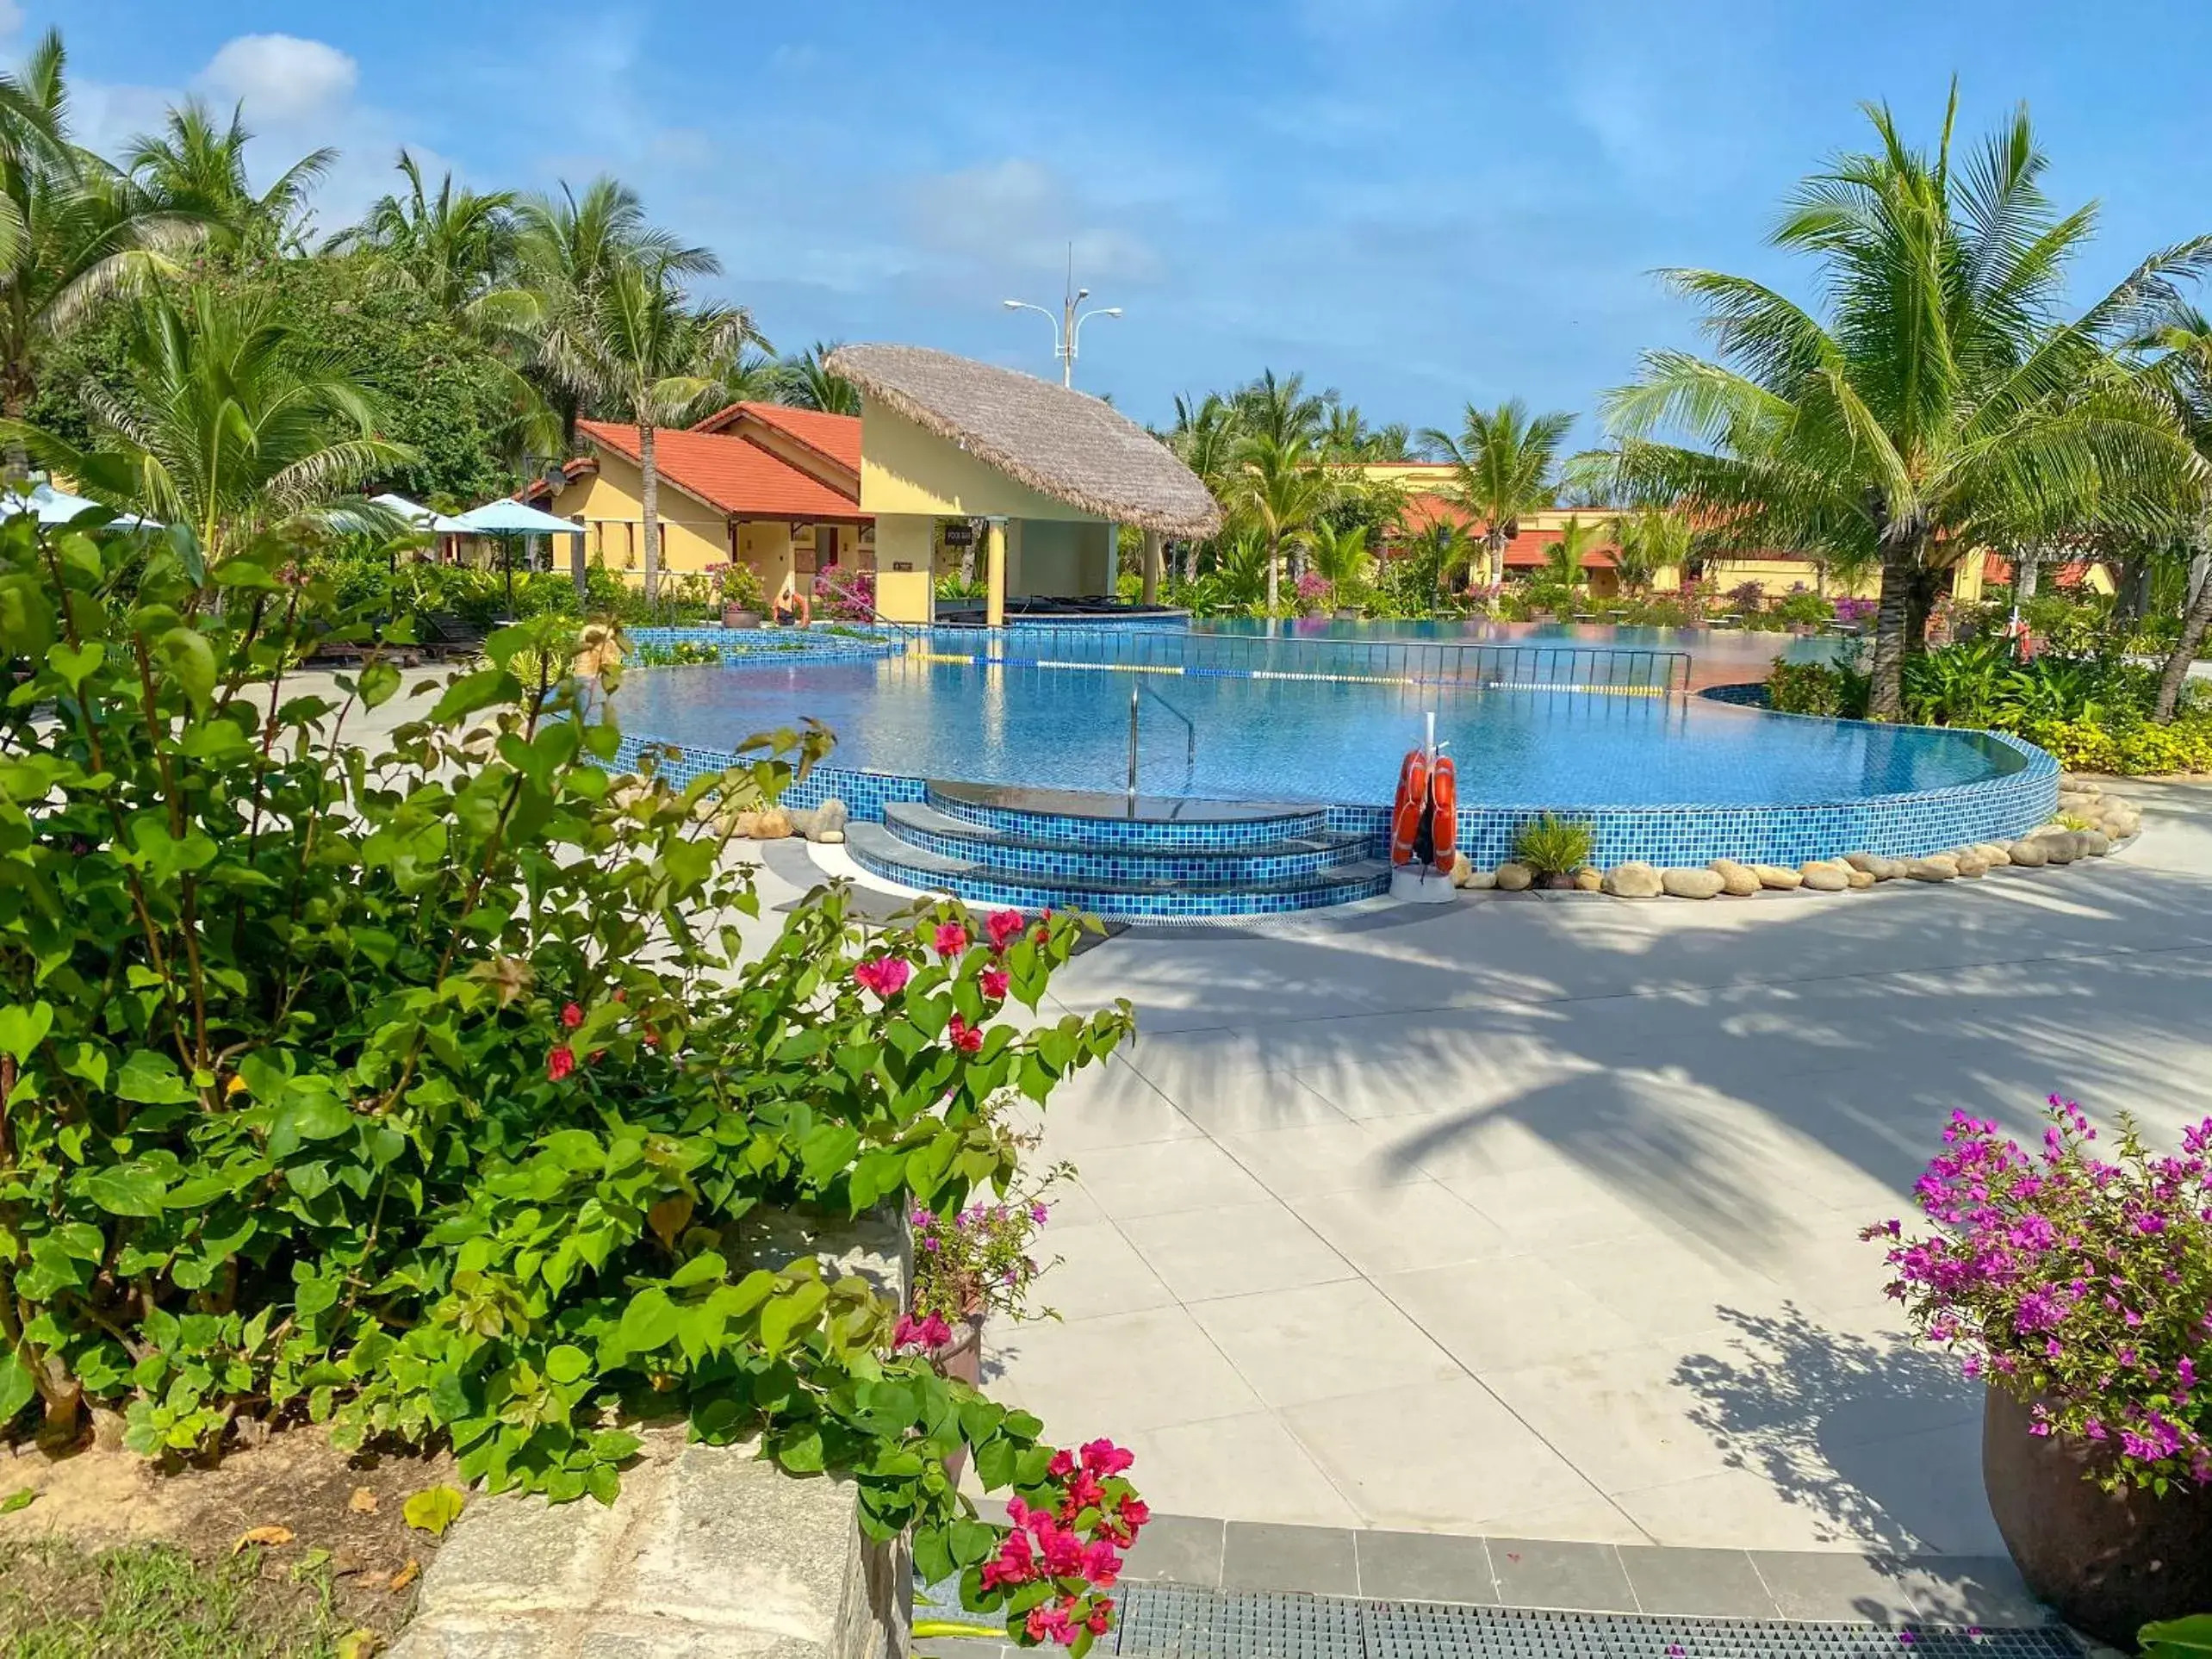 Swimming Pool in Pandanus Resort